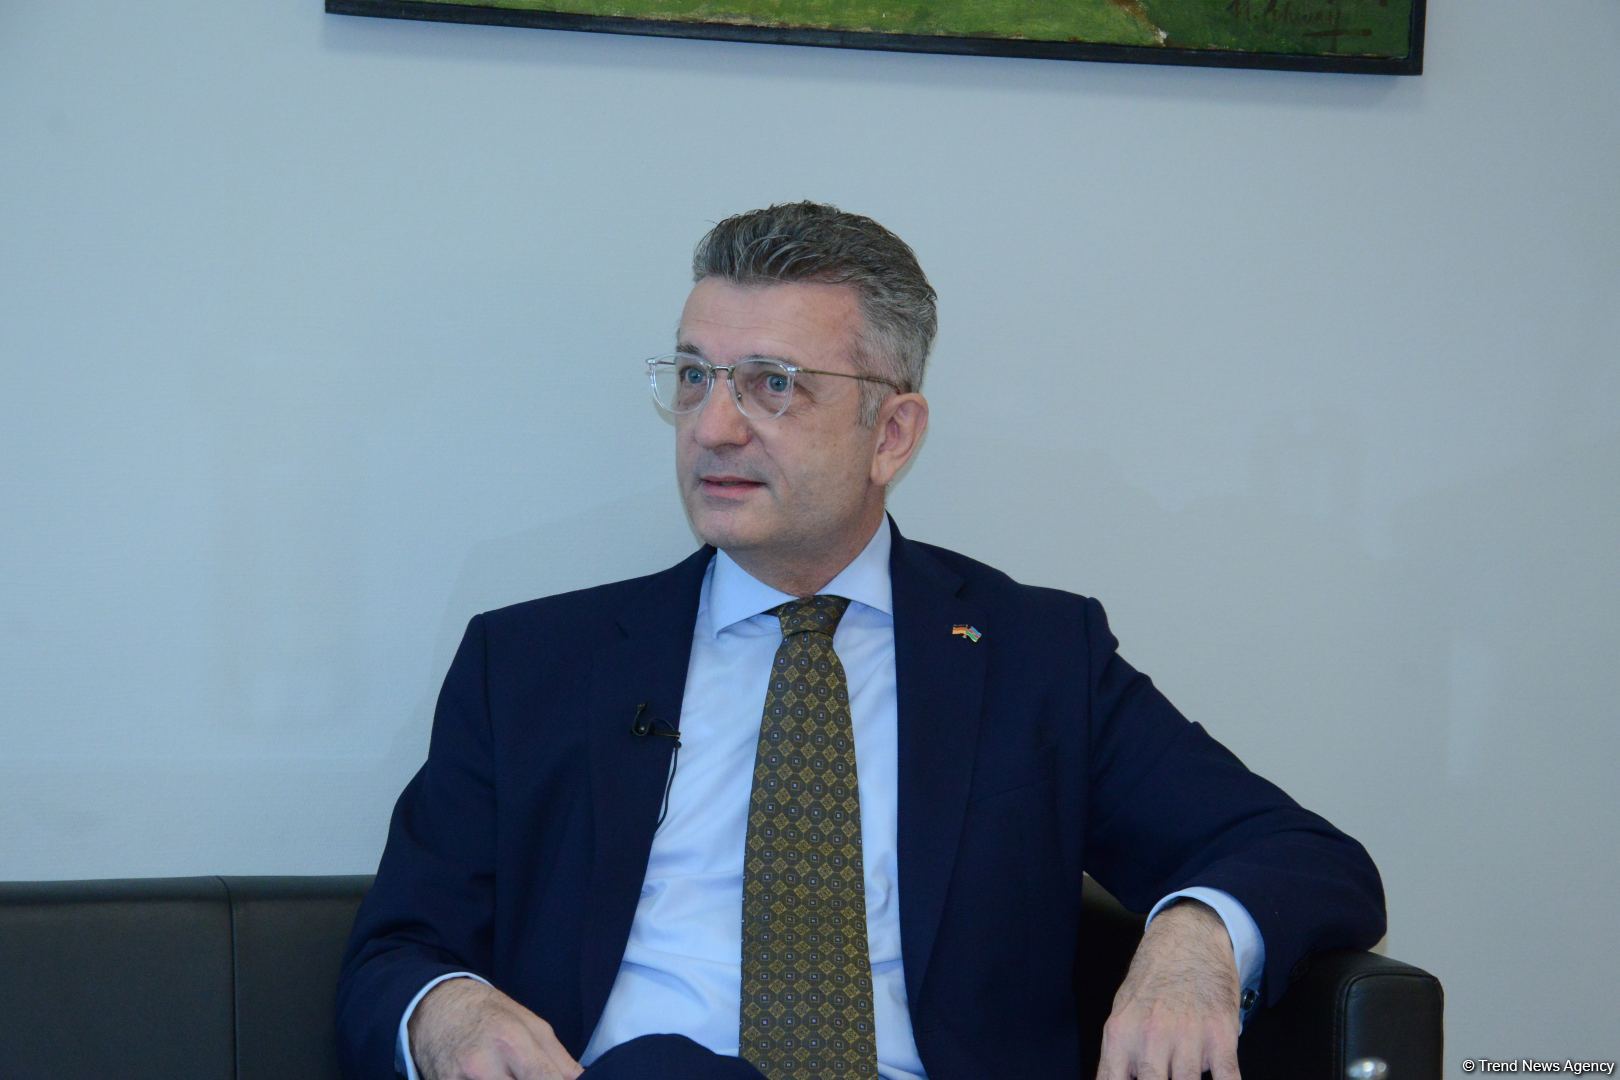 Германия надеется на продолжение динамичного развития отношений с Азербайджаном - посол Ральф Хорлеманн (Интервью) (ФОТО/ВИДЕО)